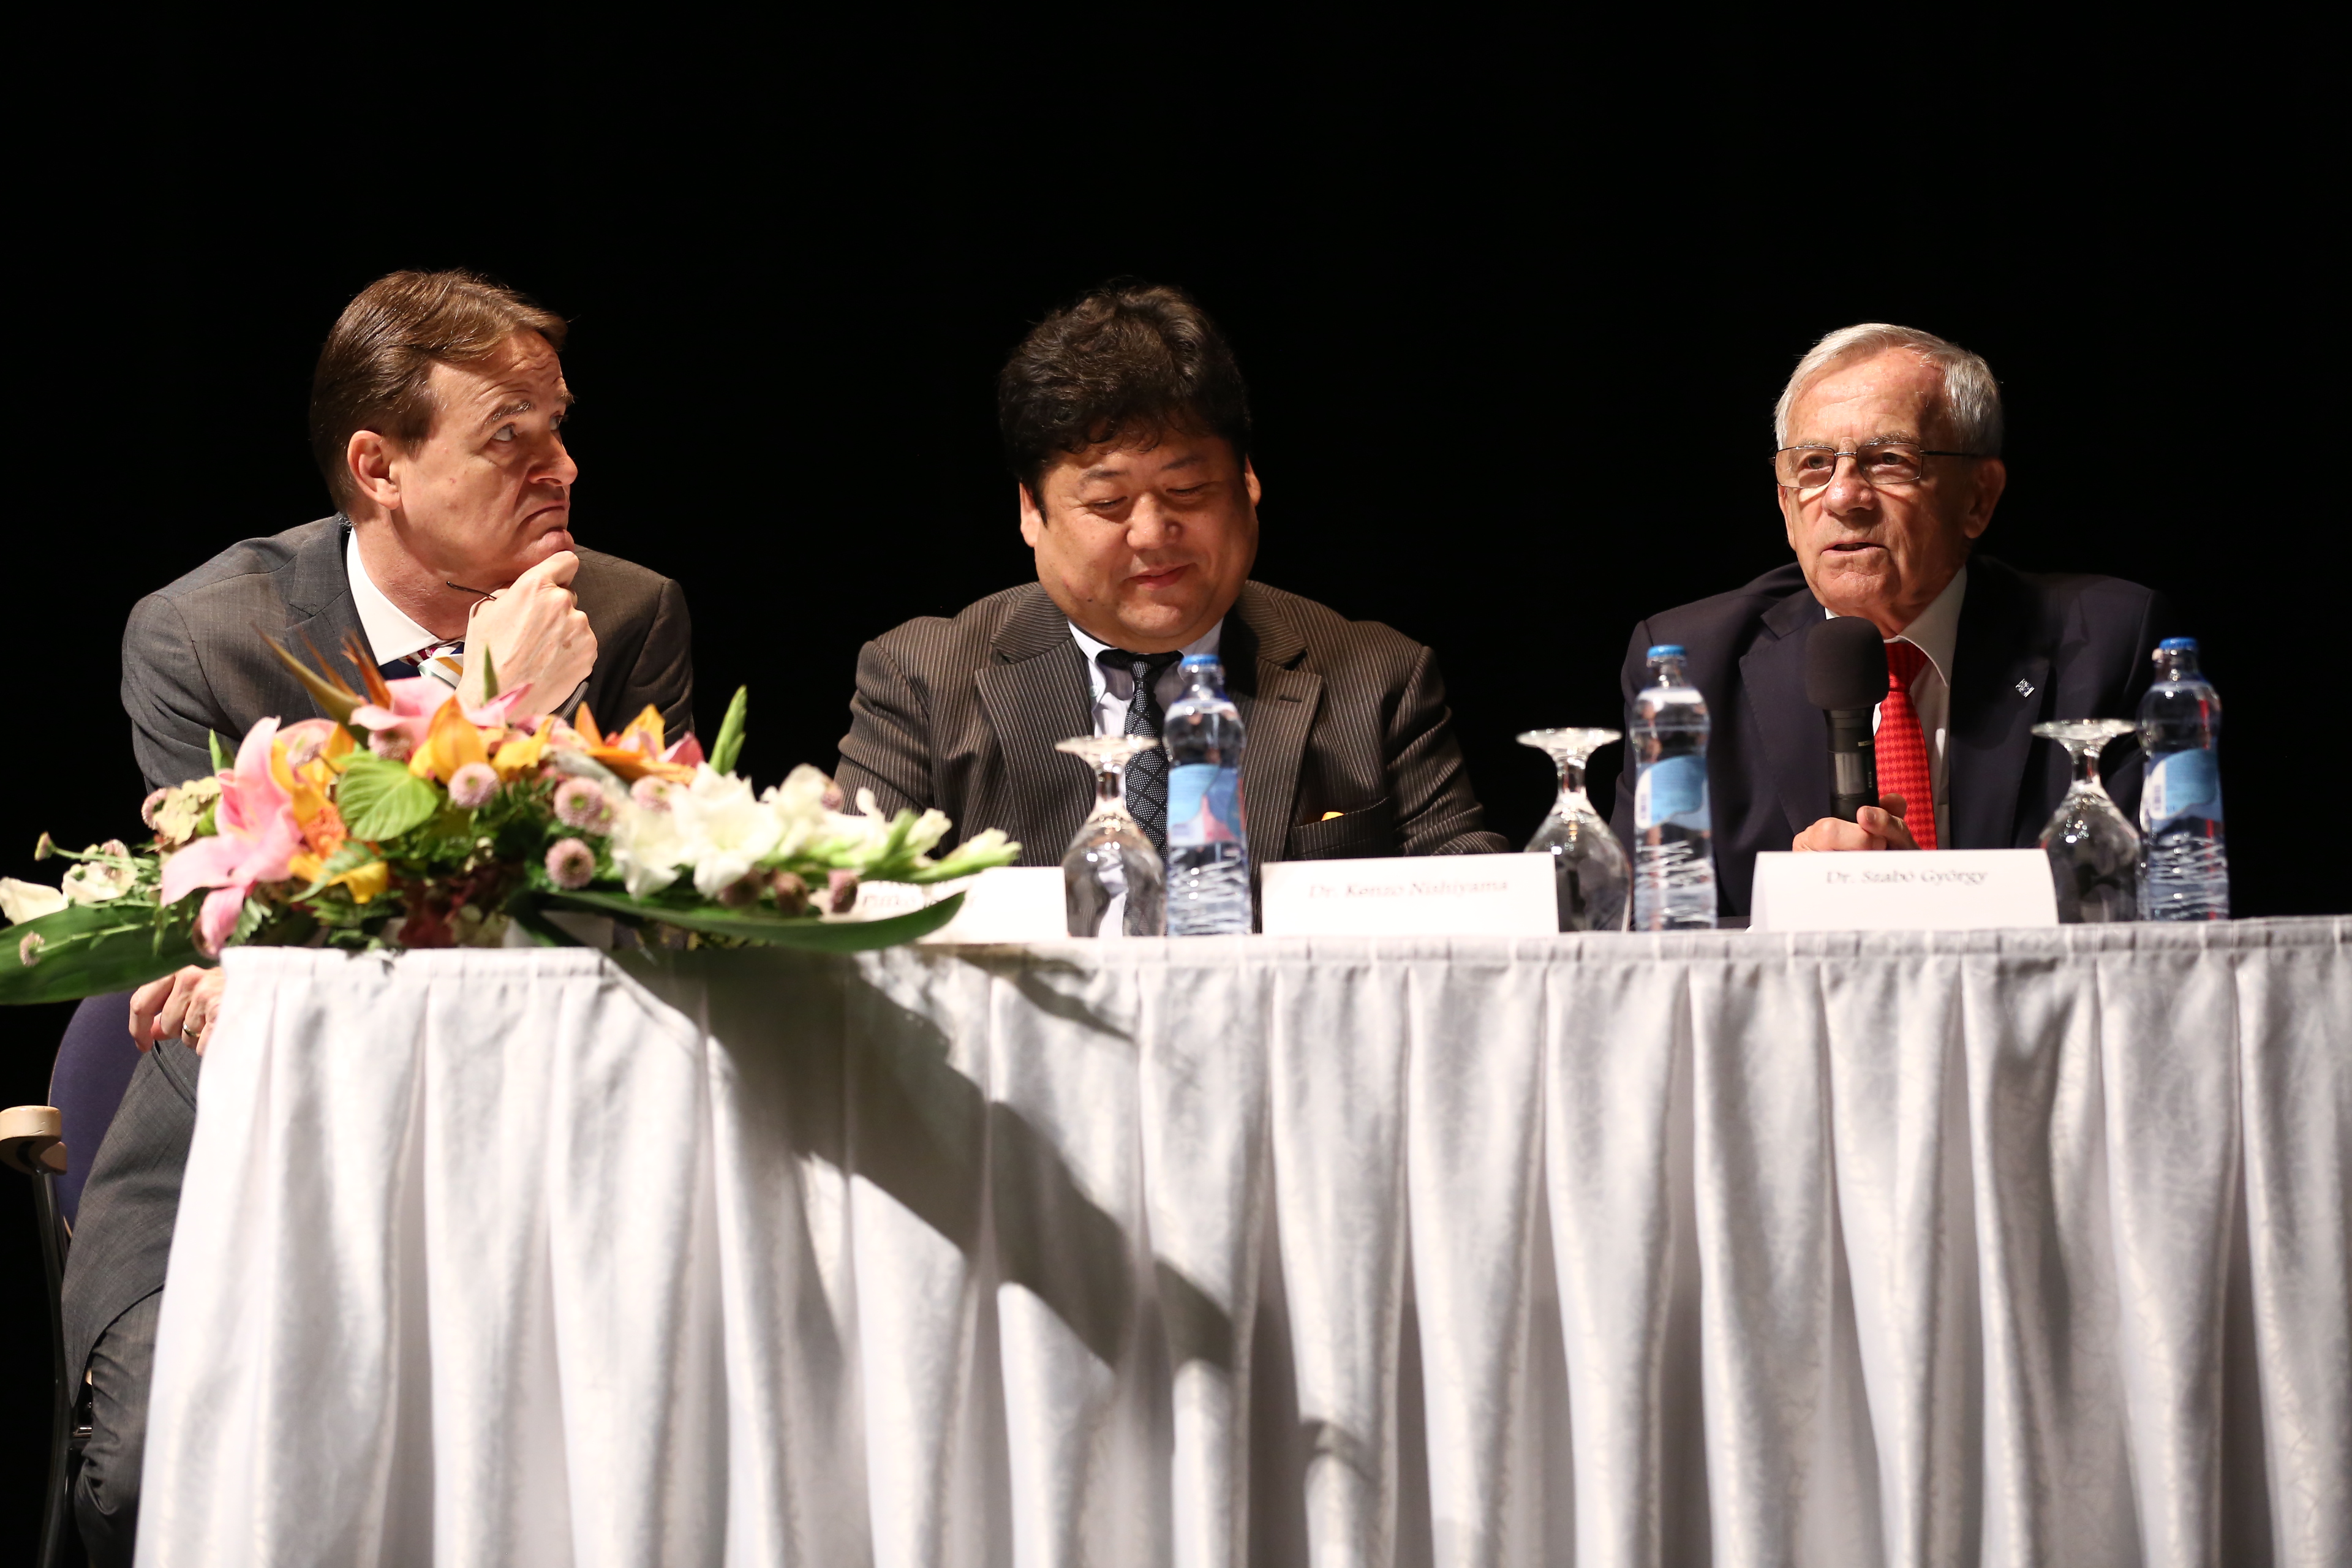 A konferencia második napján, a külföldi elõadók szekciójának üléselnökei
Dr. Piffkó József, Dr. Szabó György, Dr. Kenzo Nishiyama voltak
